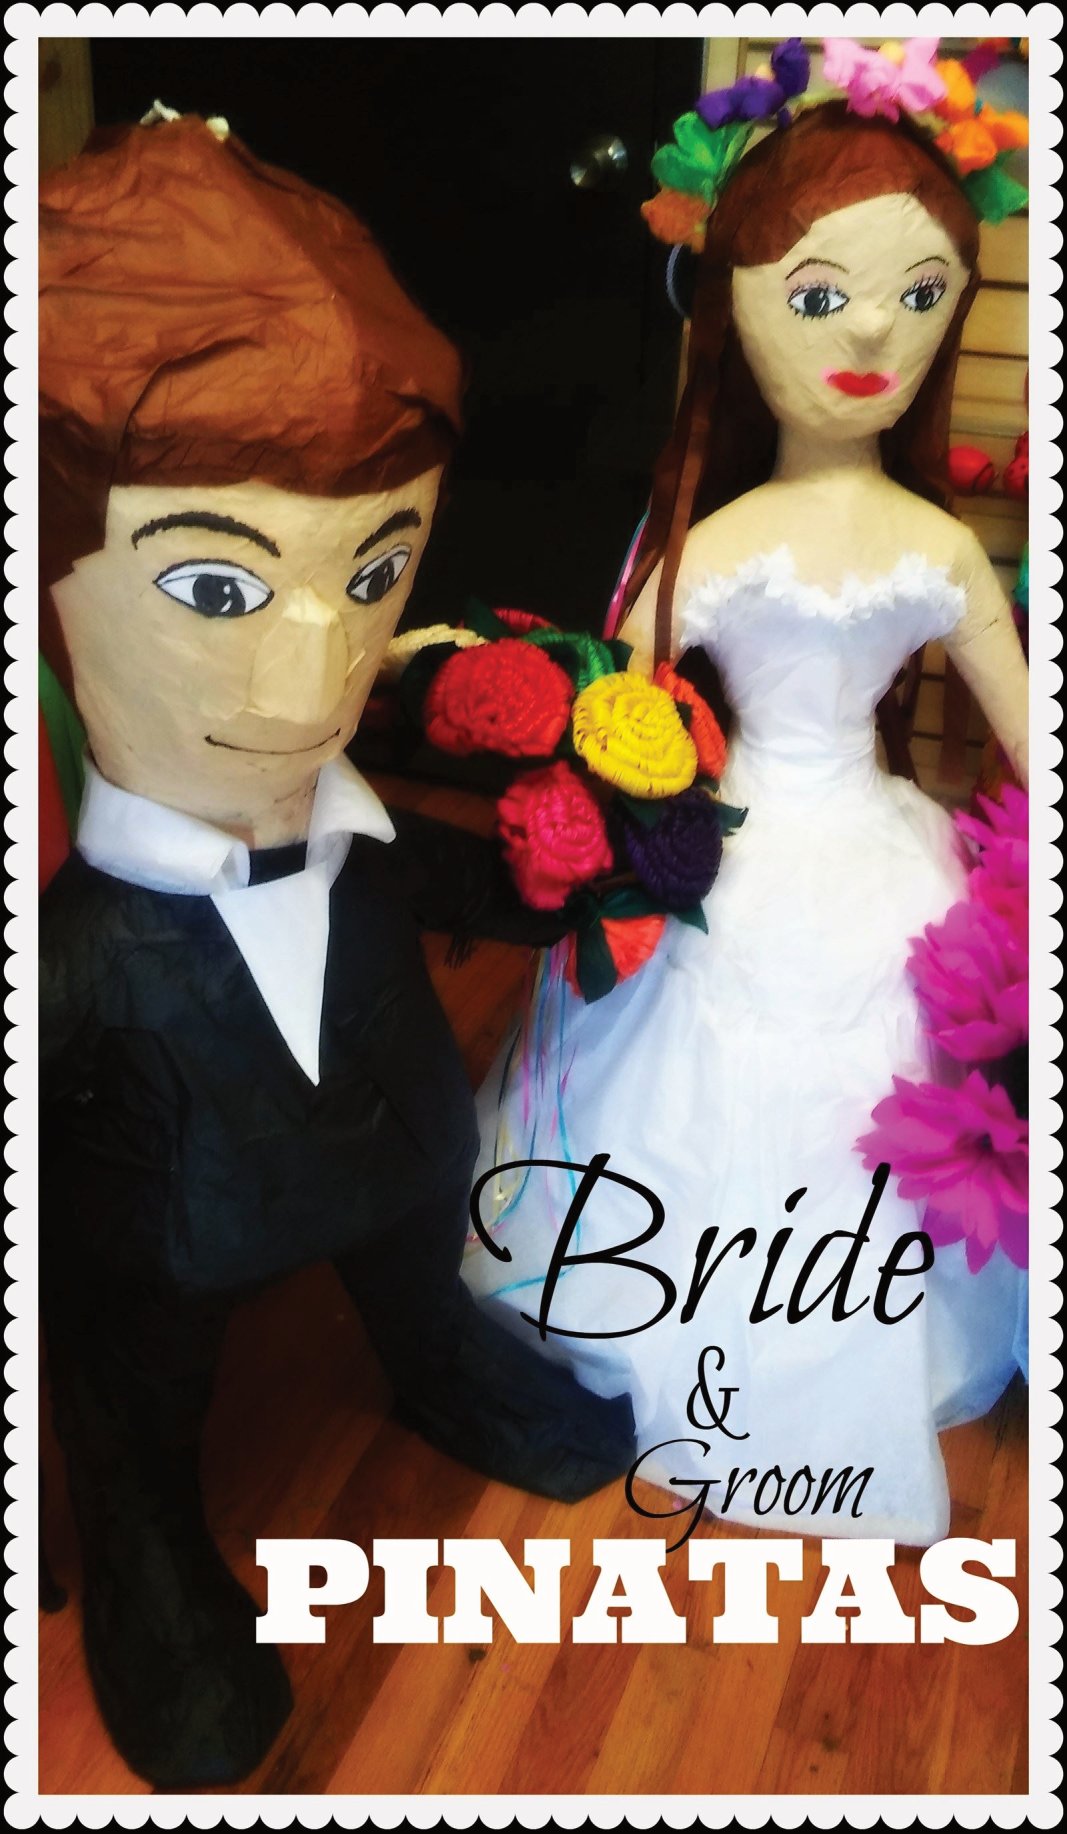 Wedding bride & Groom pinata by The Cascaron Store in San Antonio, Texas